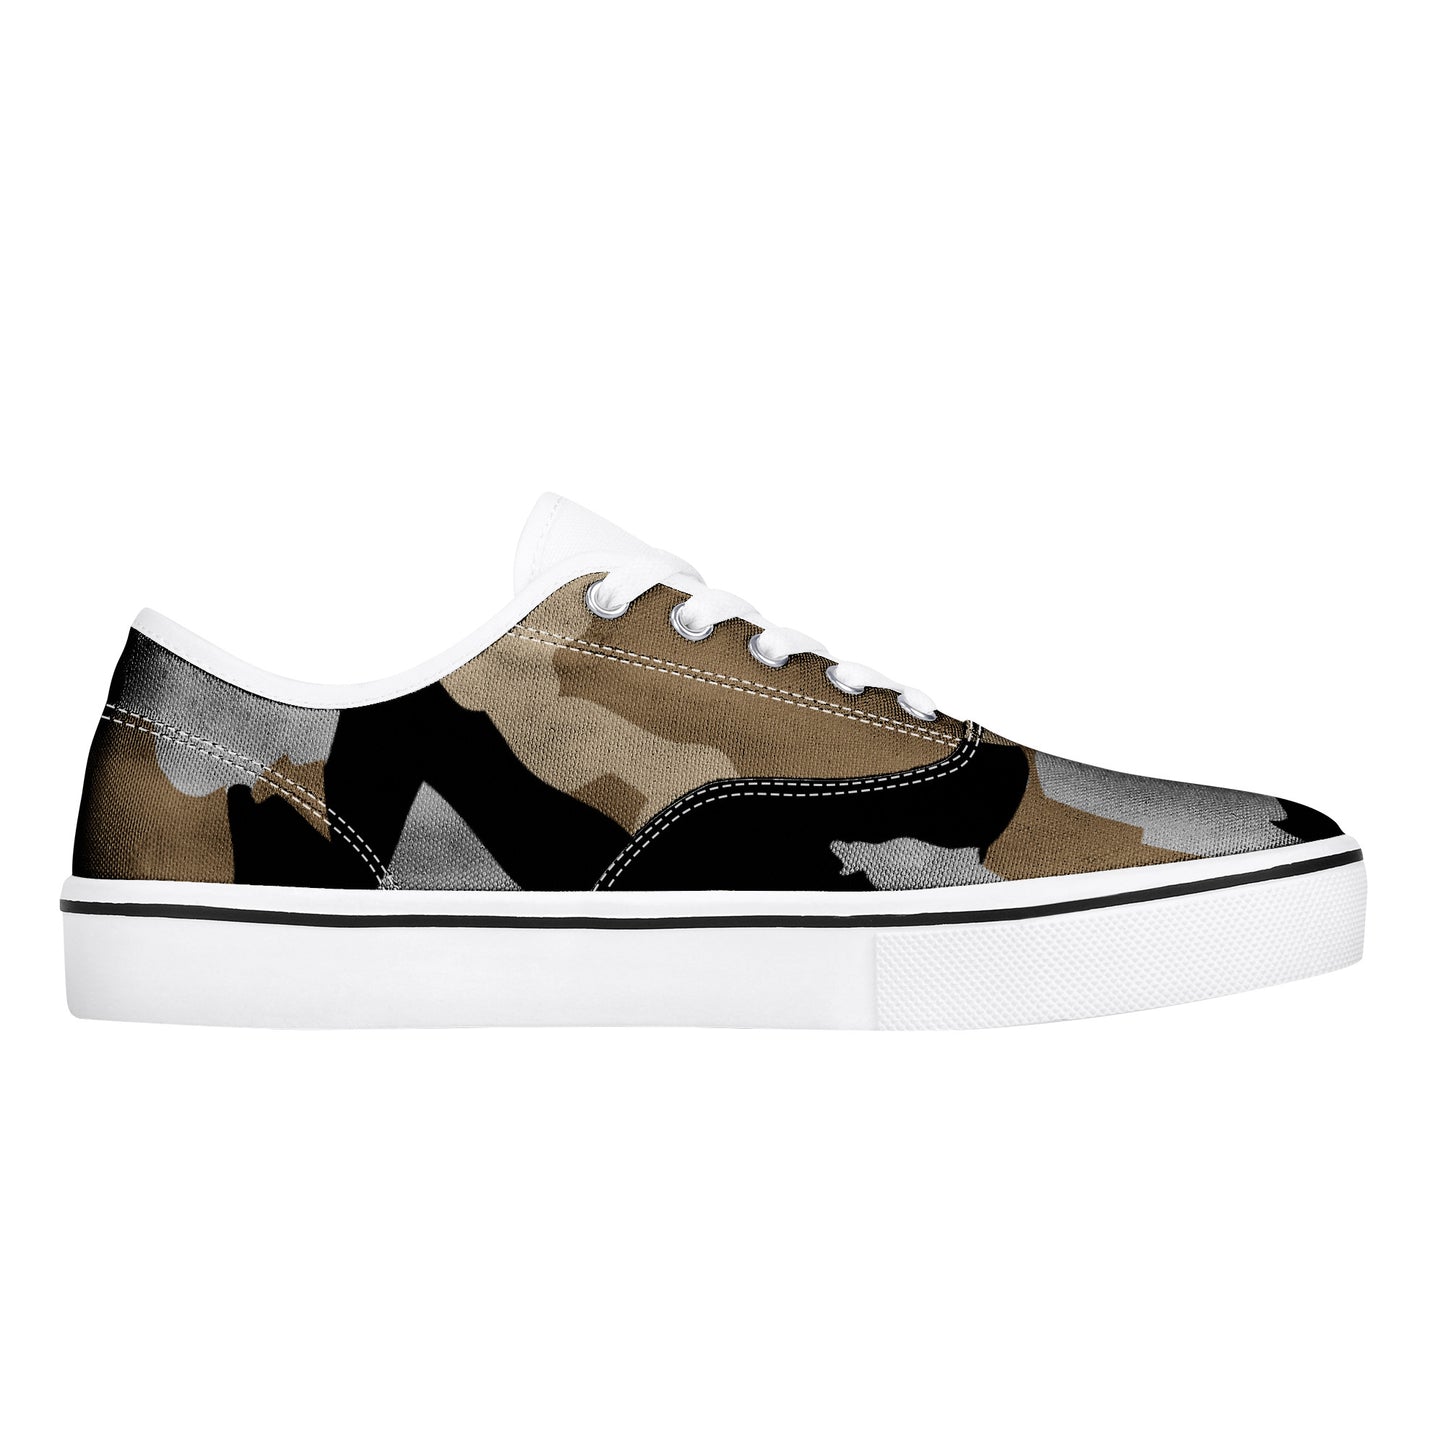 AZONTO Cam Skate Shoe - White